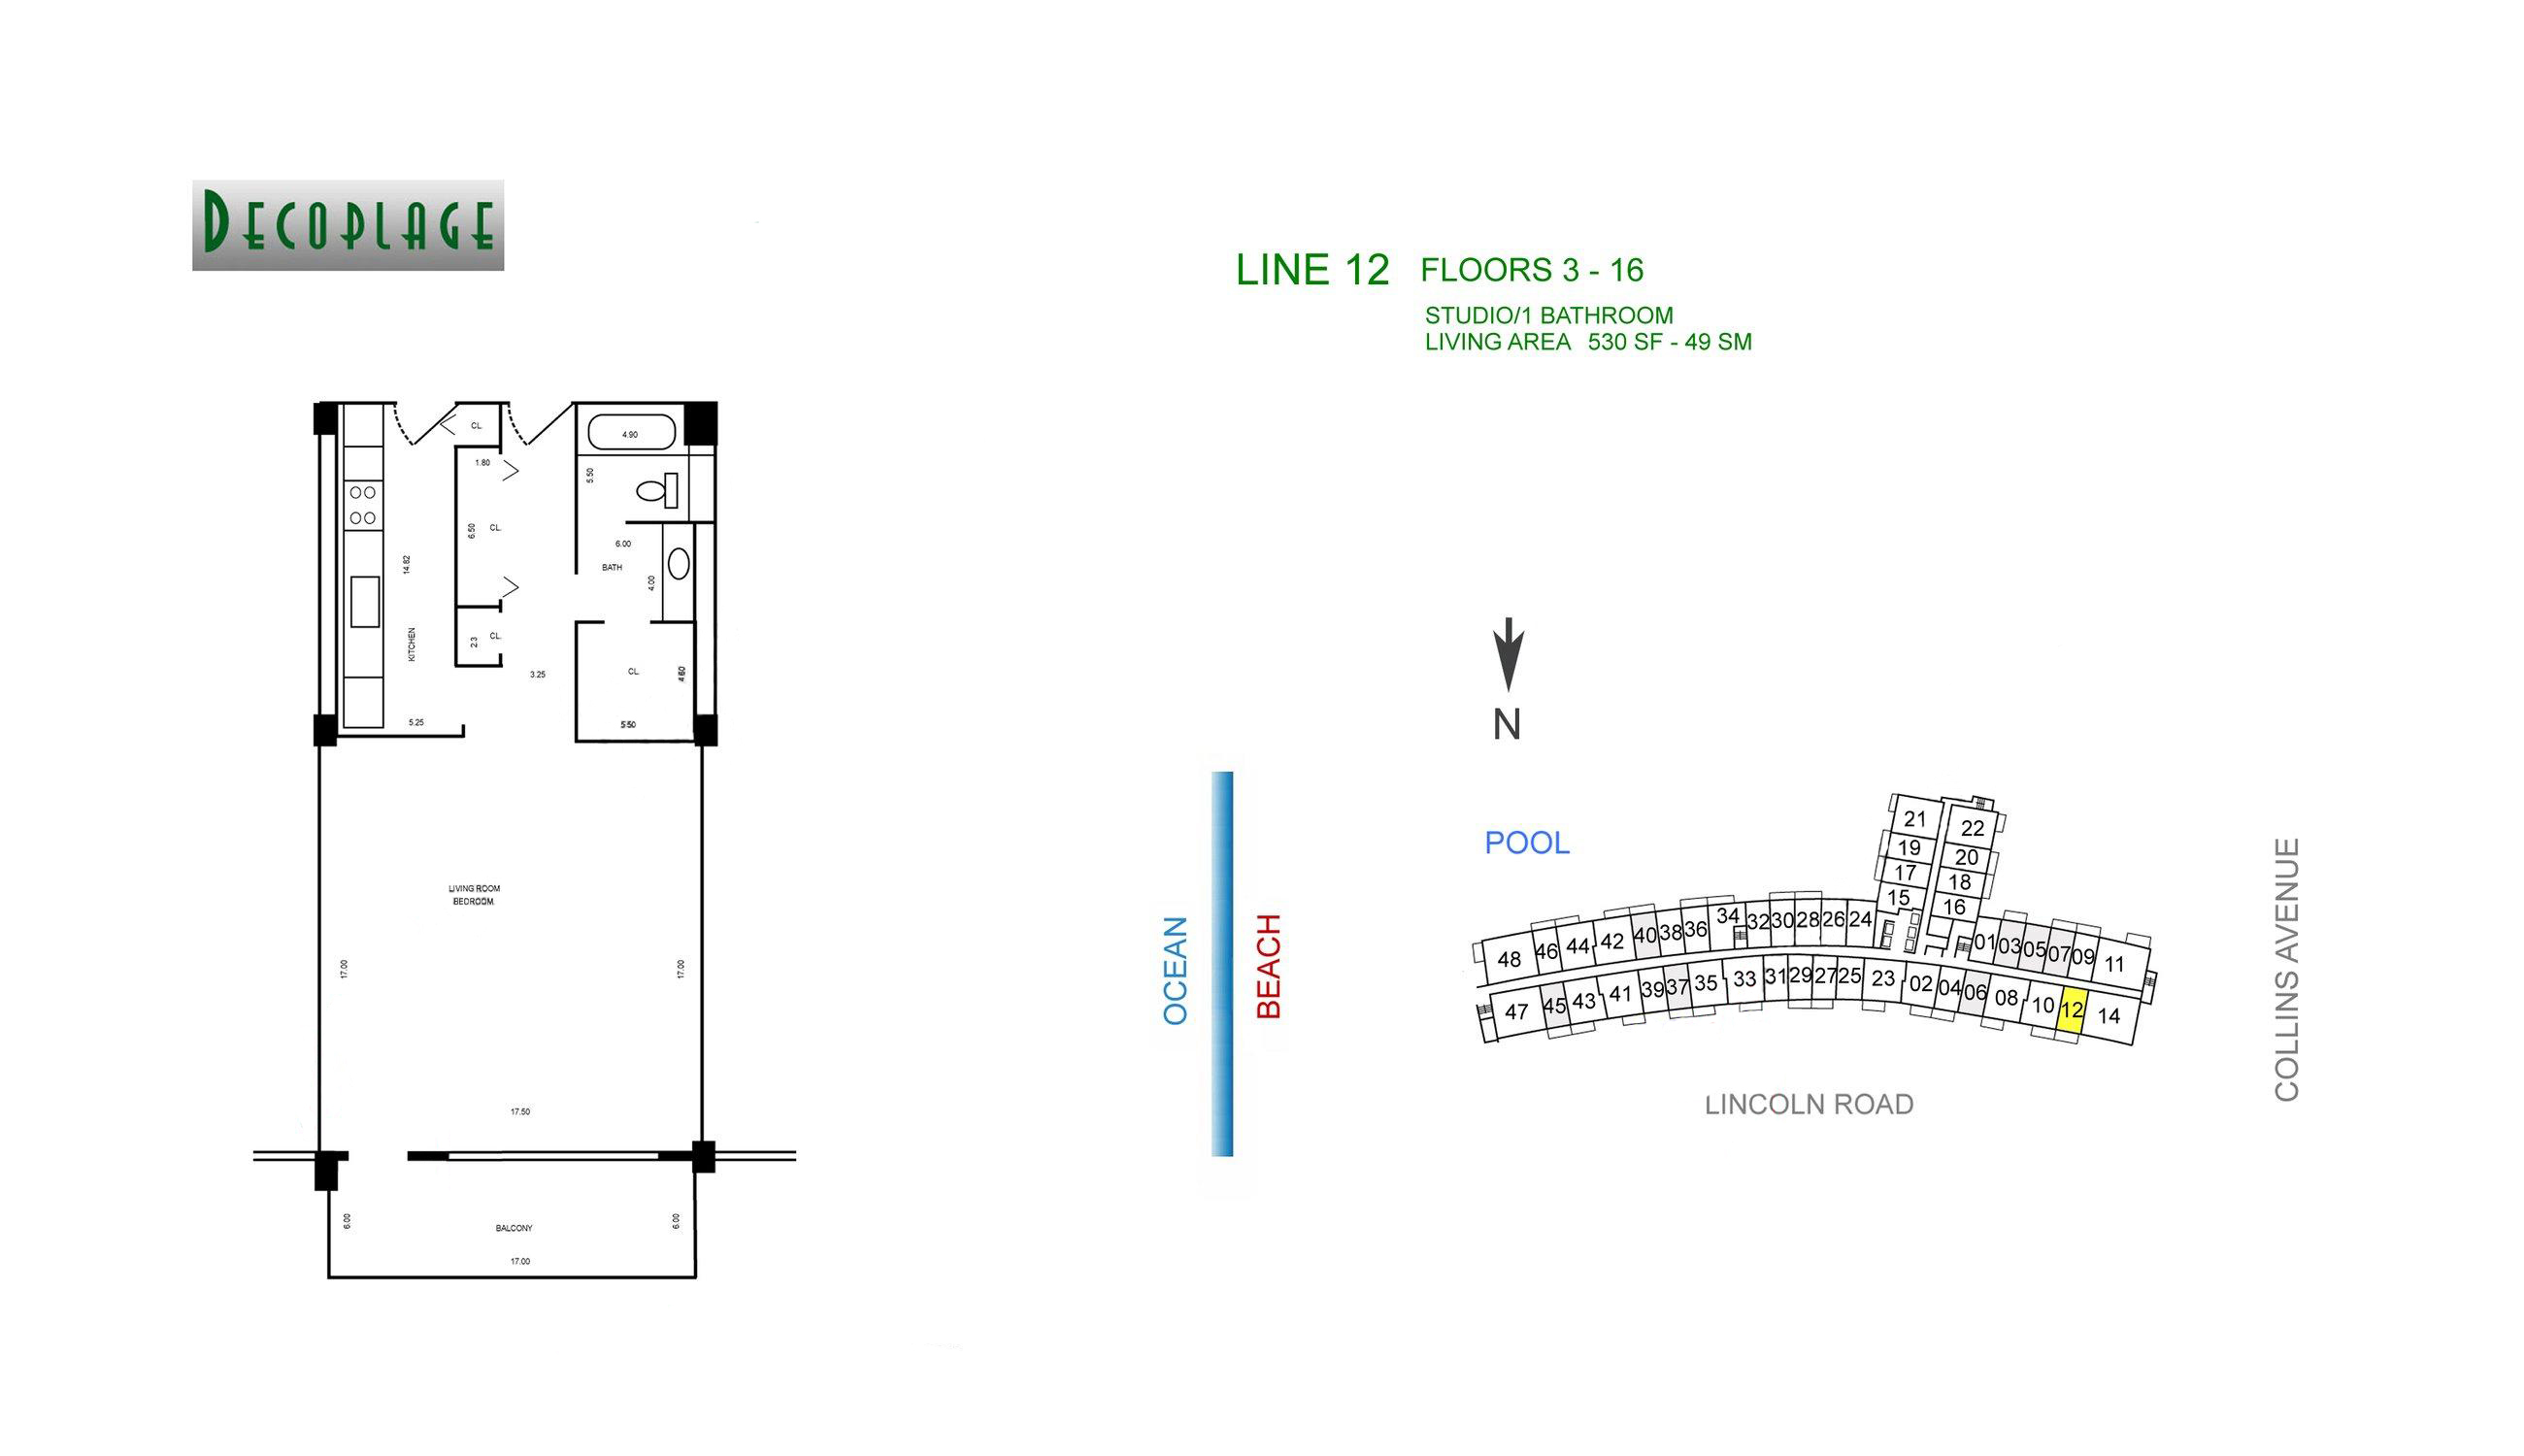 Decoplage Lines 12 Floors 3-16